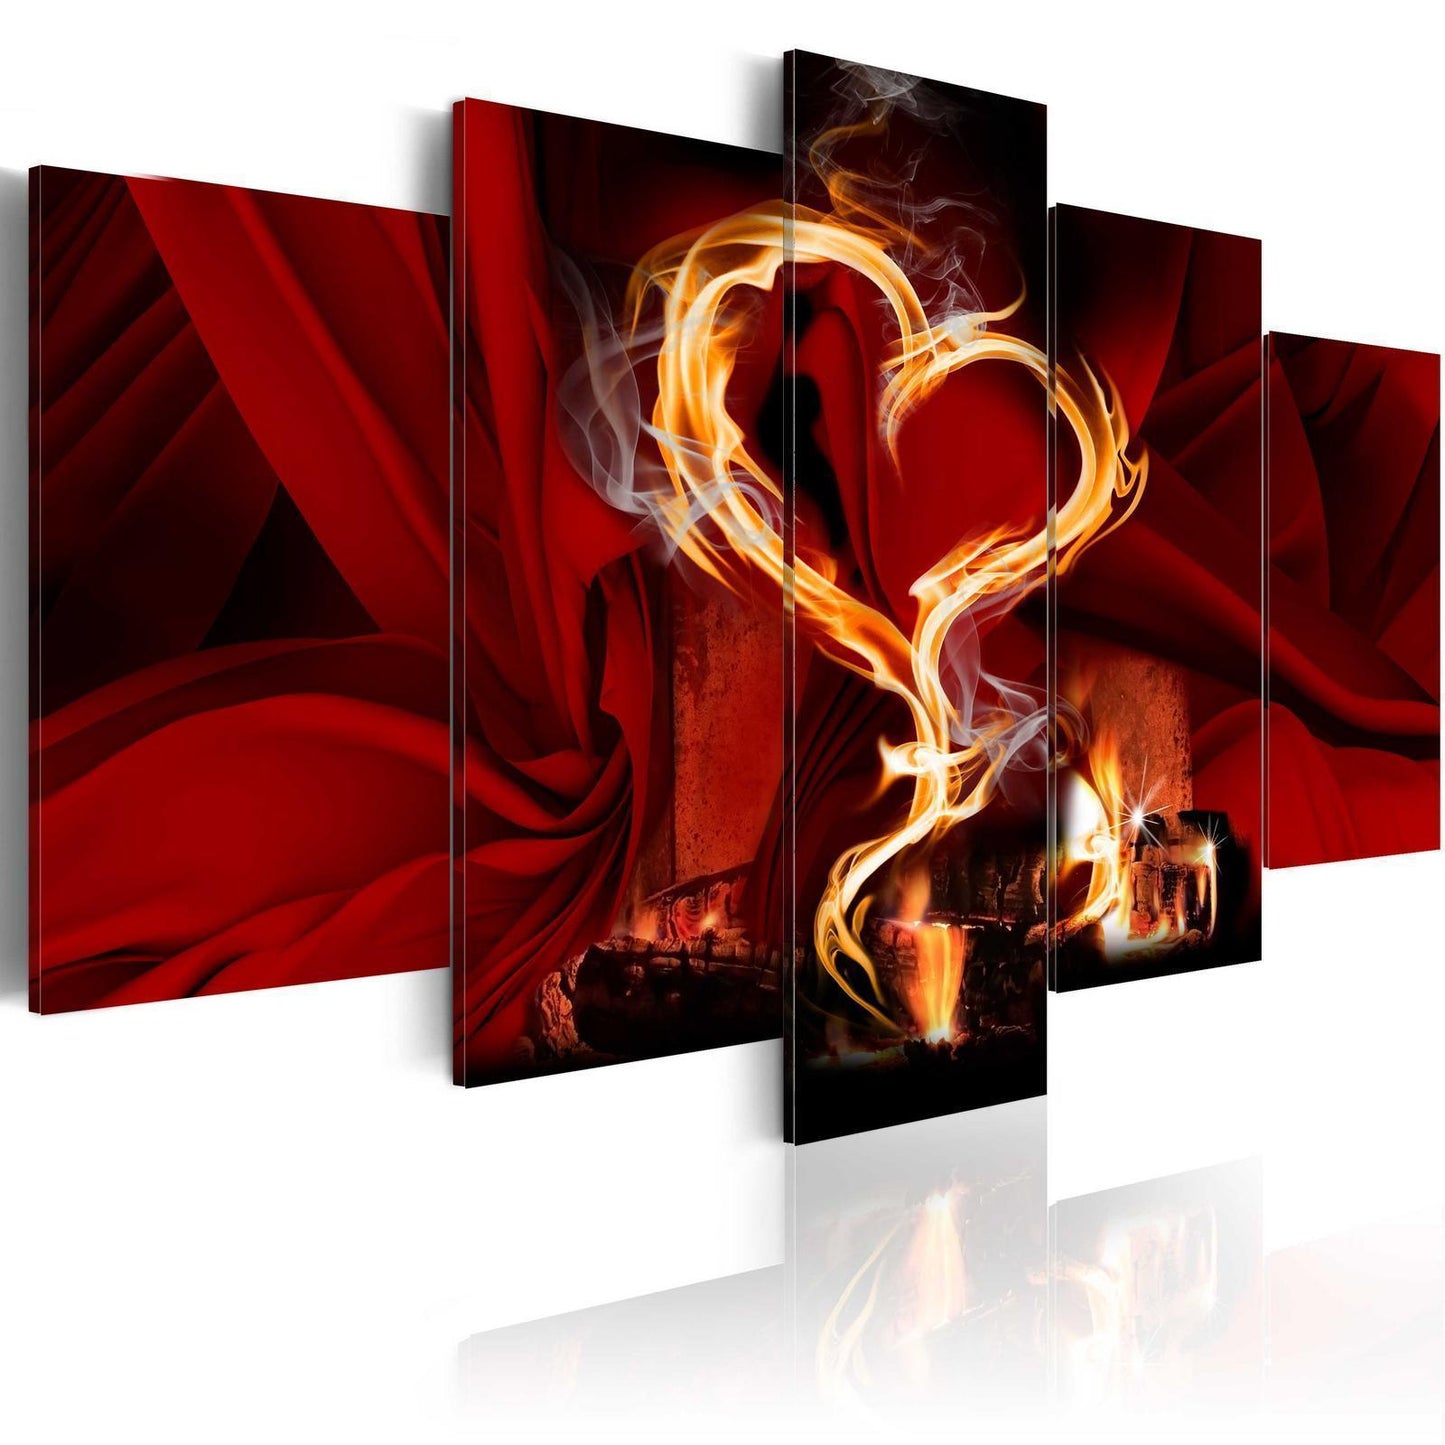 Schilderij - Flames of love: heart